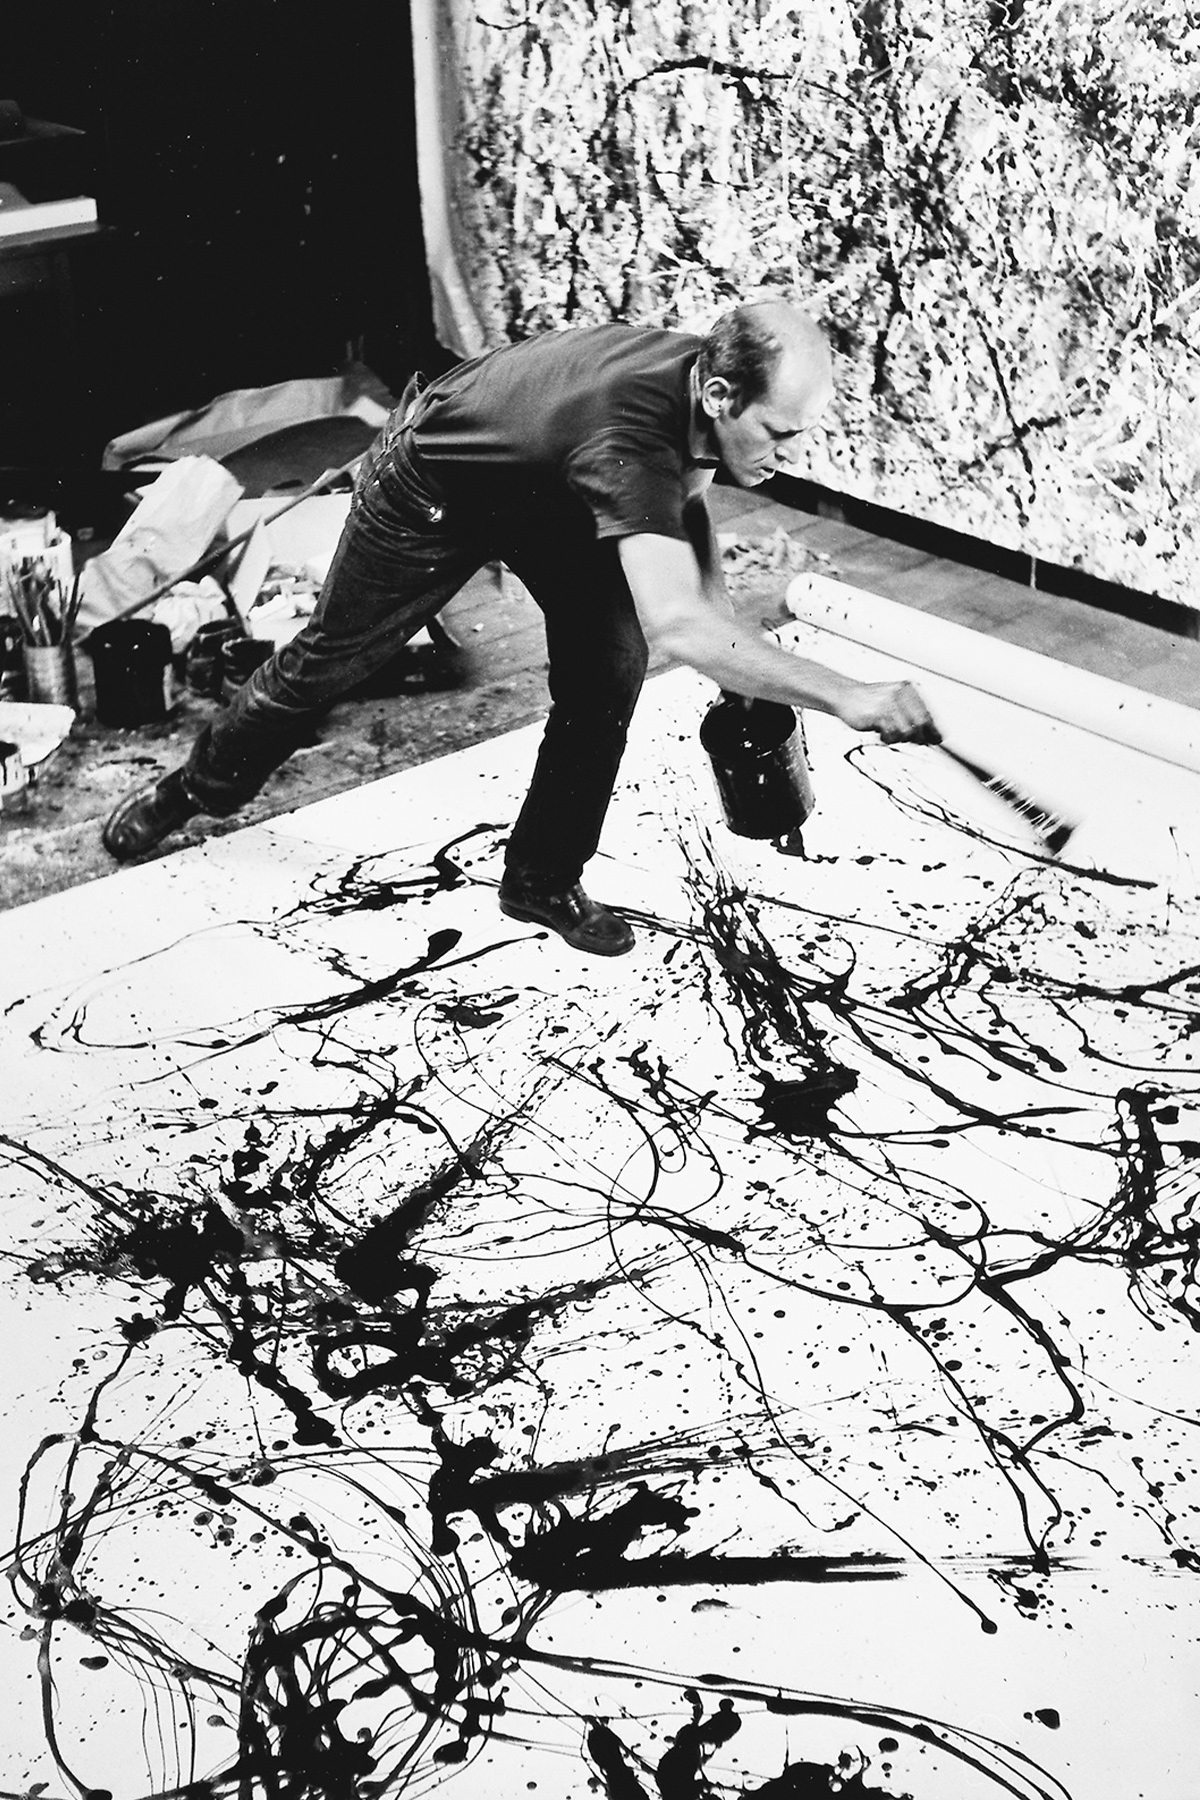 Jackson Pollock’s Summertime